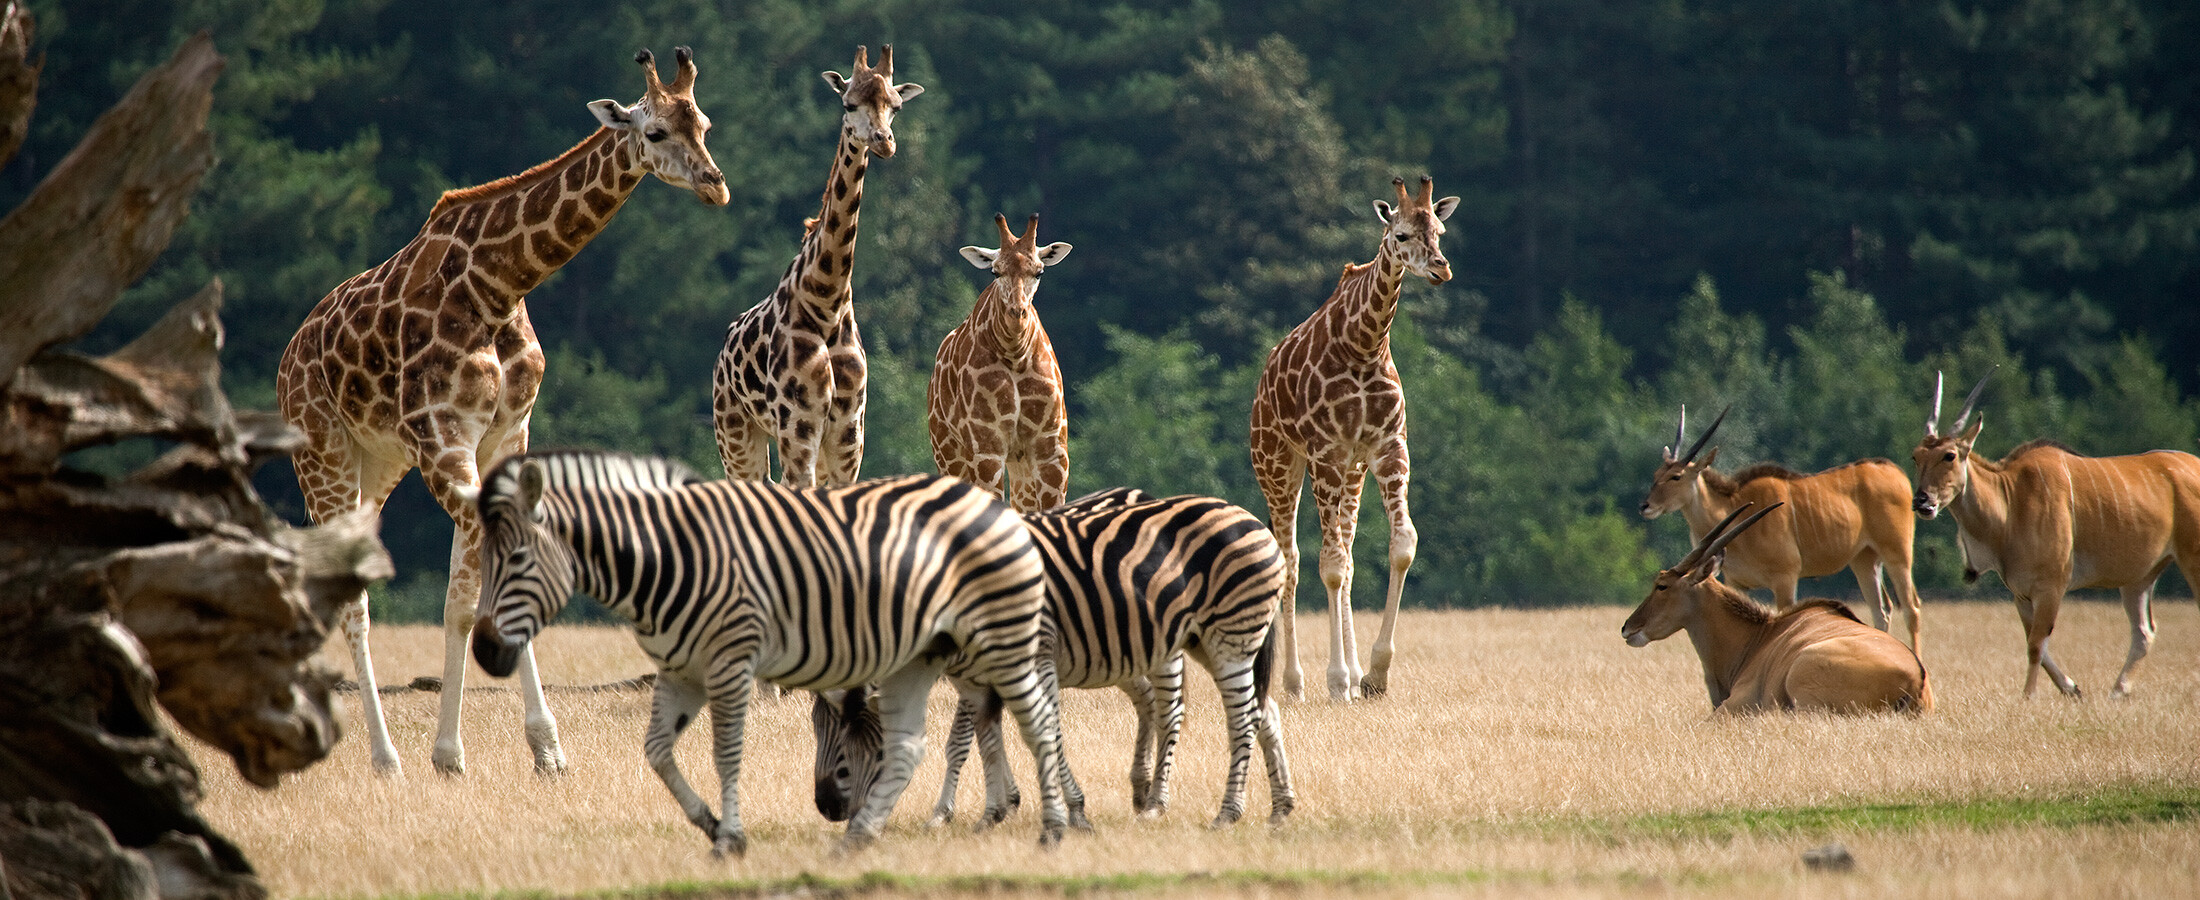 Giraffen und Zebras laufen durch Knuthenborg Safaripark in Dänemark